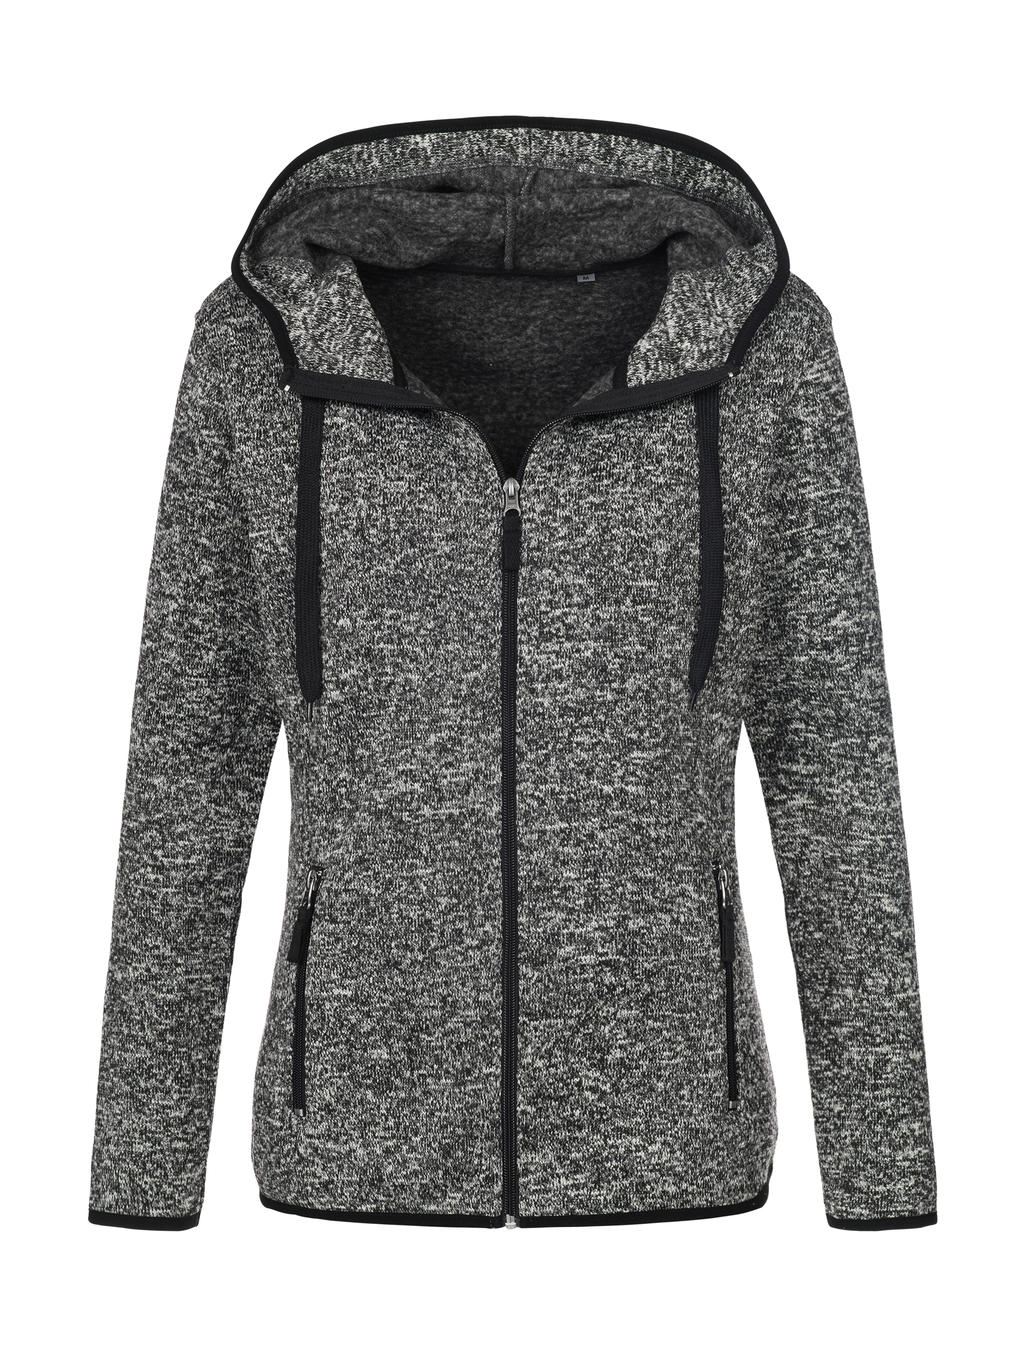 Knit Fleece Jacket Women - dark grey melange